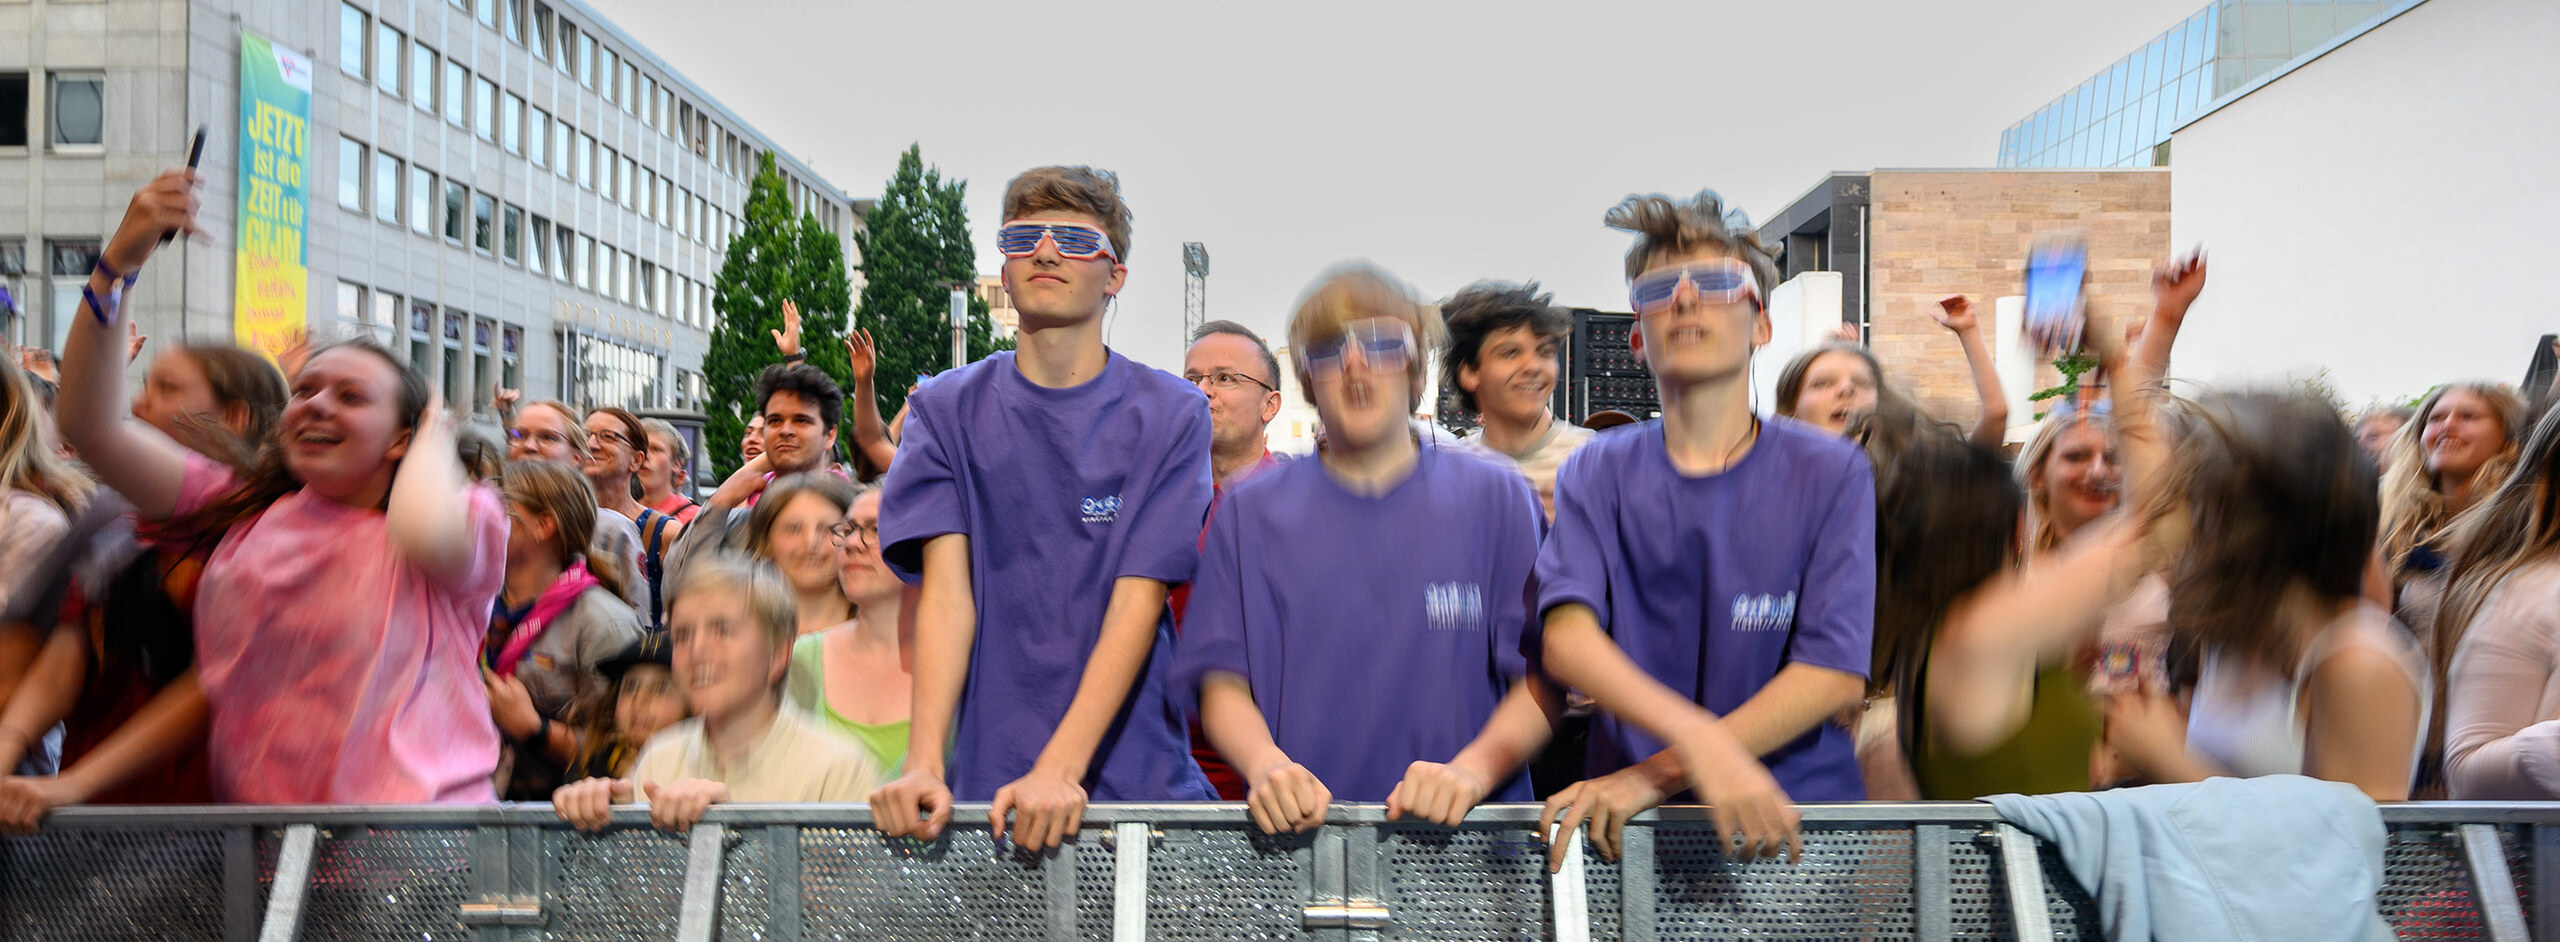 Drei jugendliche Männer in lila T-Shirt stehen in der ersten Reihe eines Konzerts. Der linke trägt eine Sonnenbrille. Die anderen Menschen sind unscharf. Sie tanzen